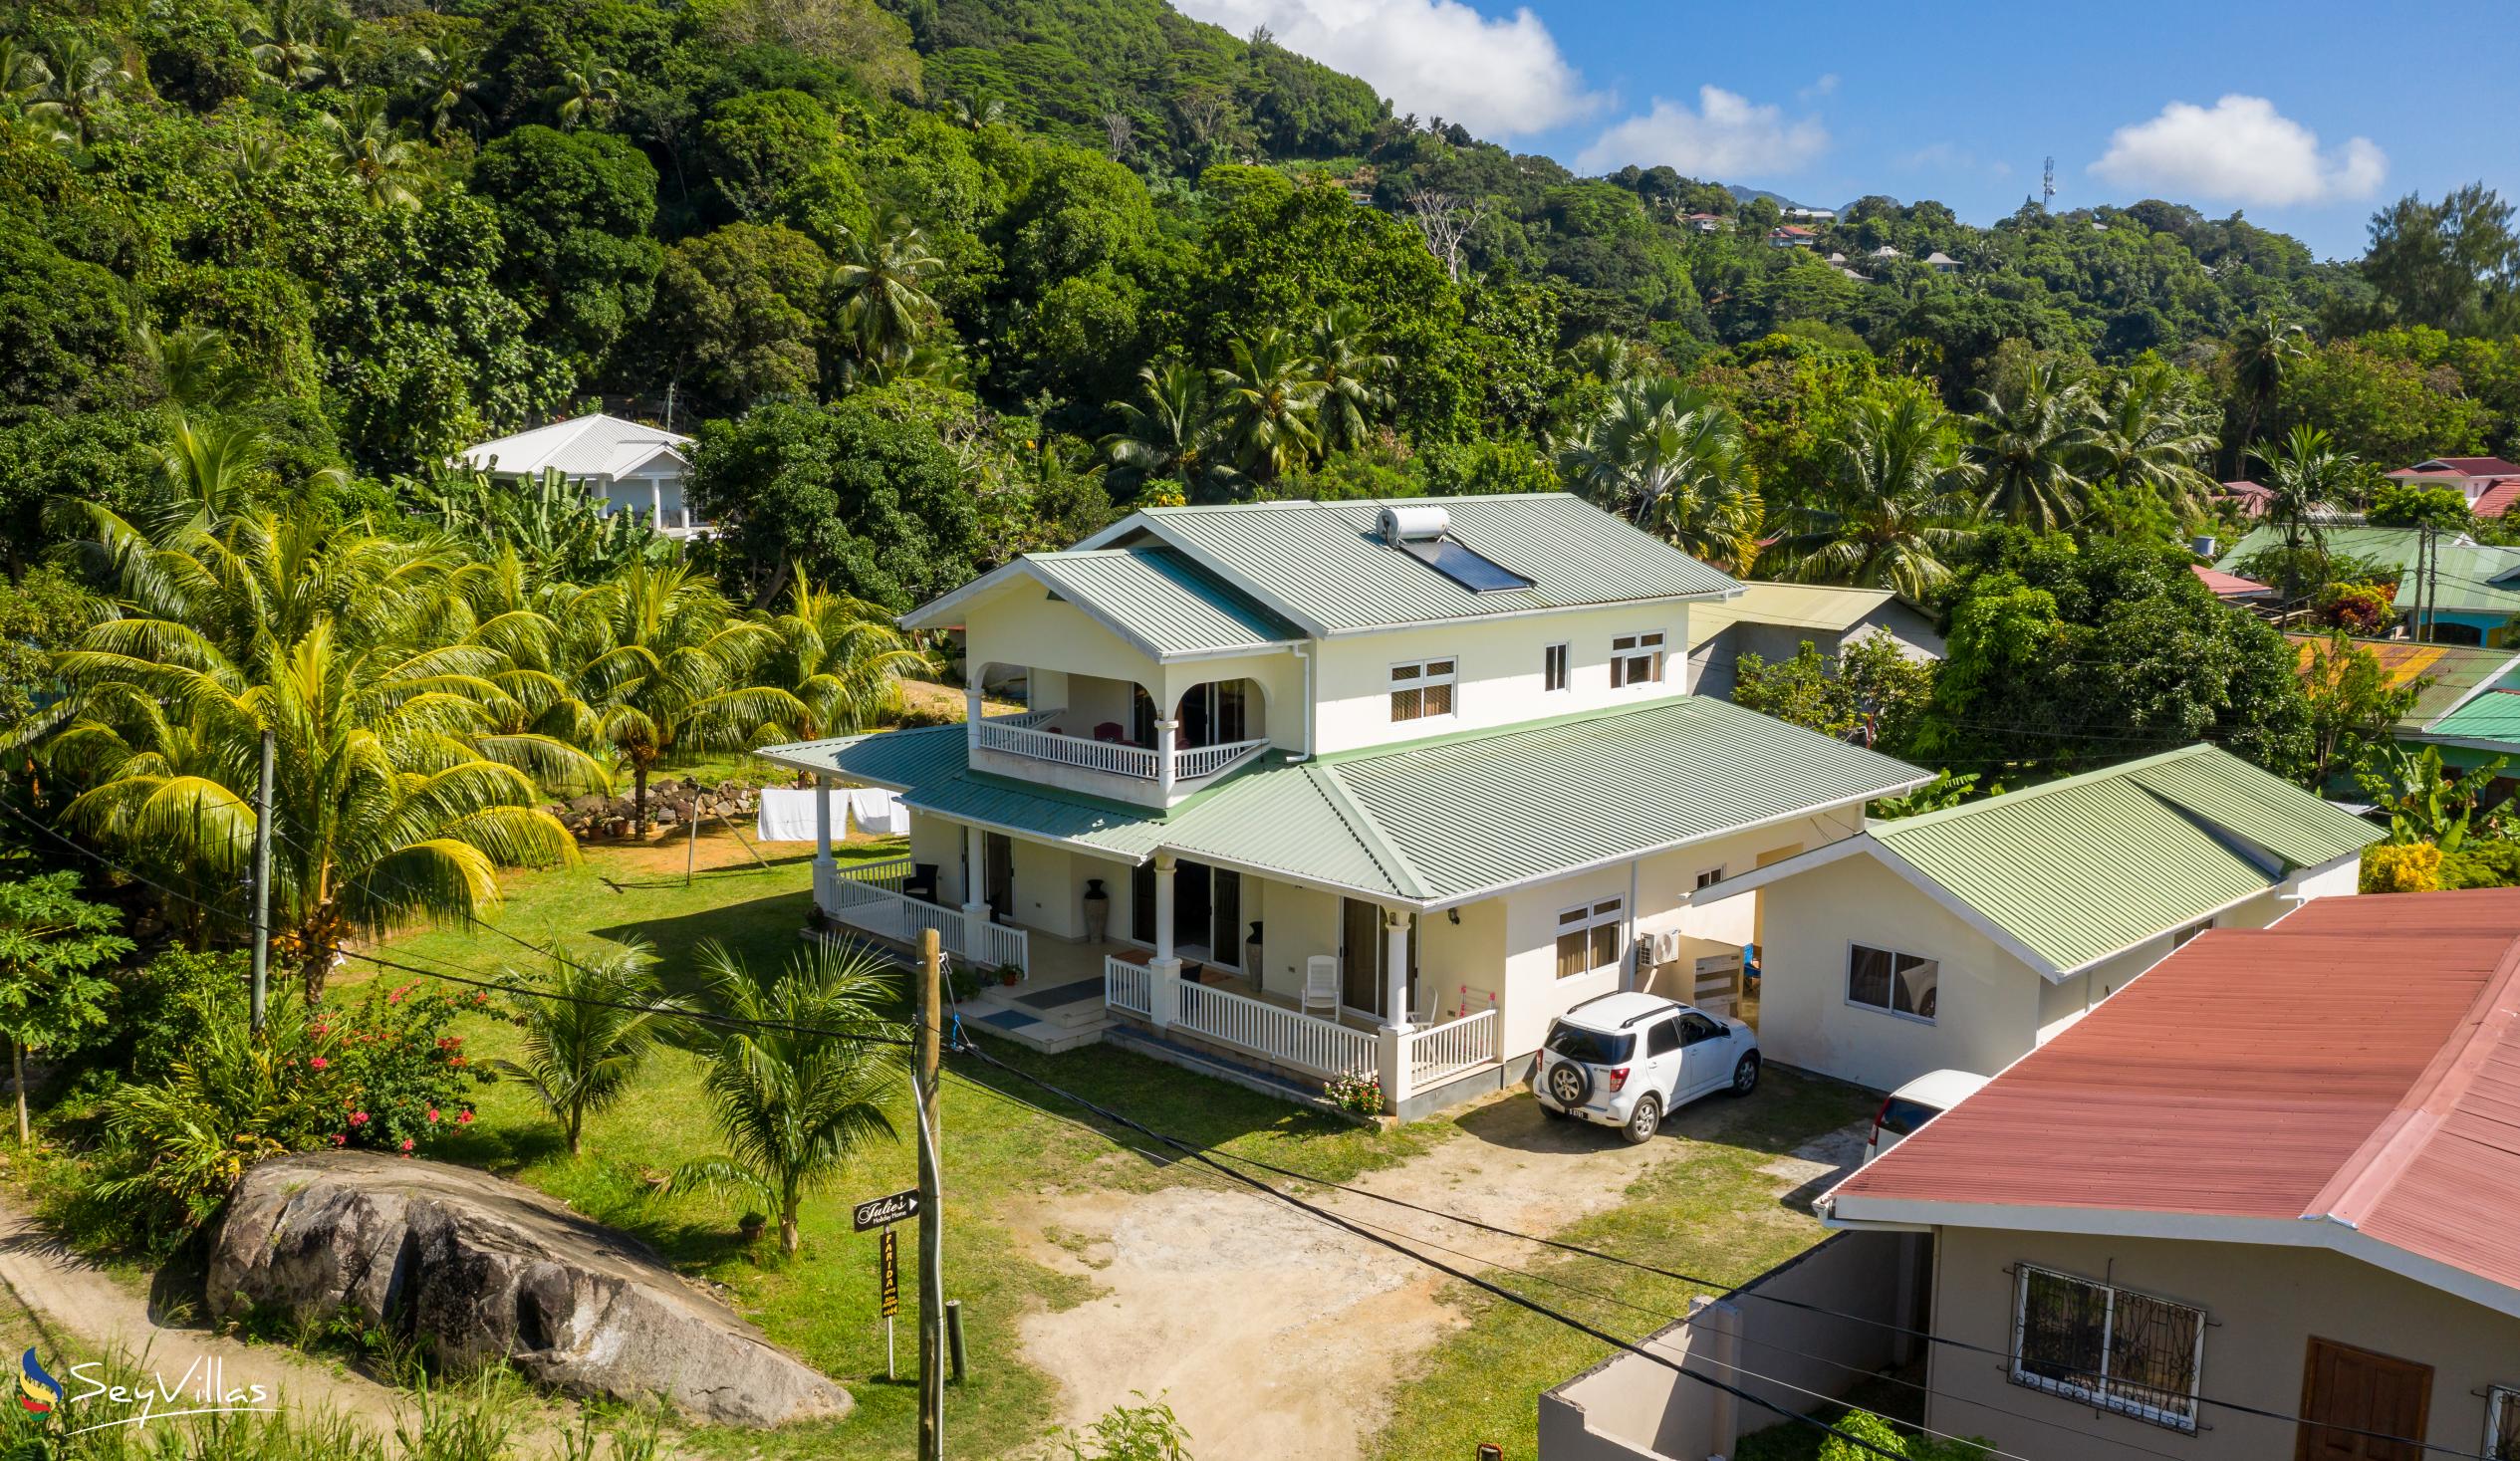 Foto 3: Julie's Holiday Home - Aussenbereich - Mahé (Seychellen)